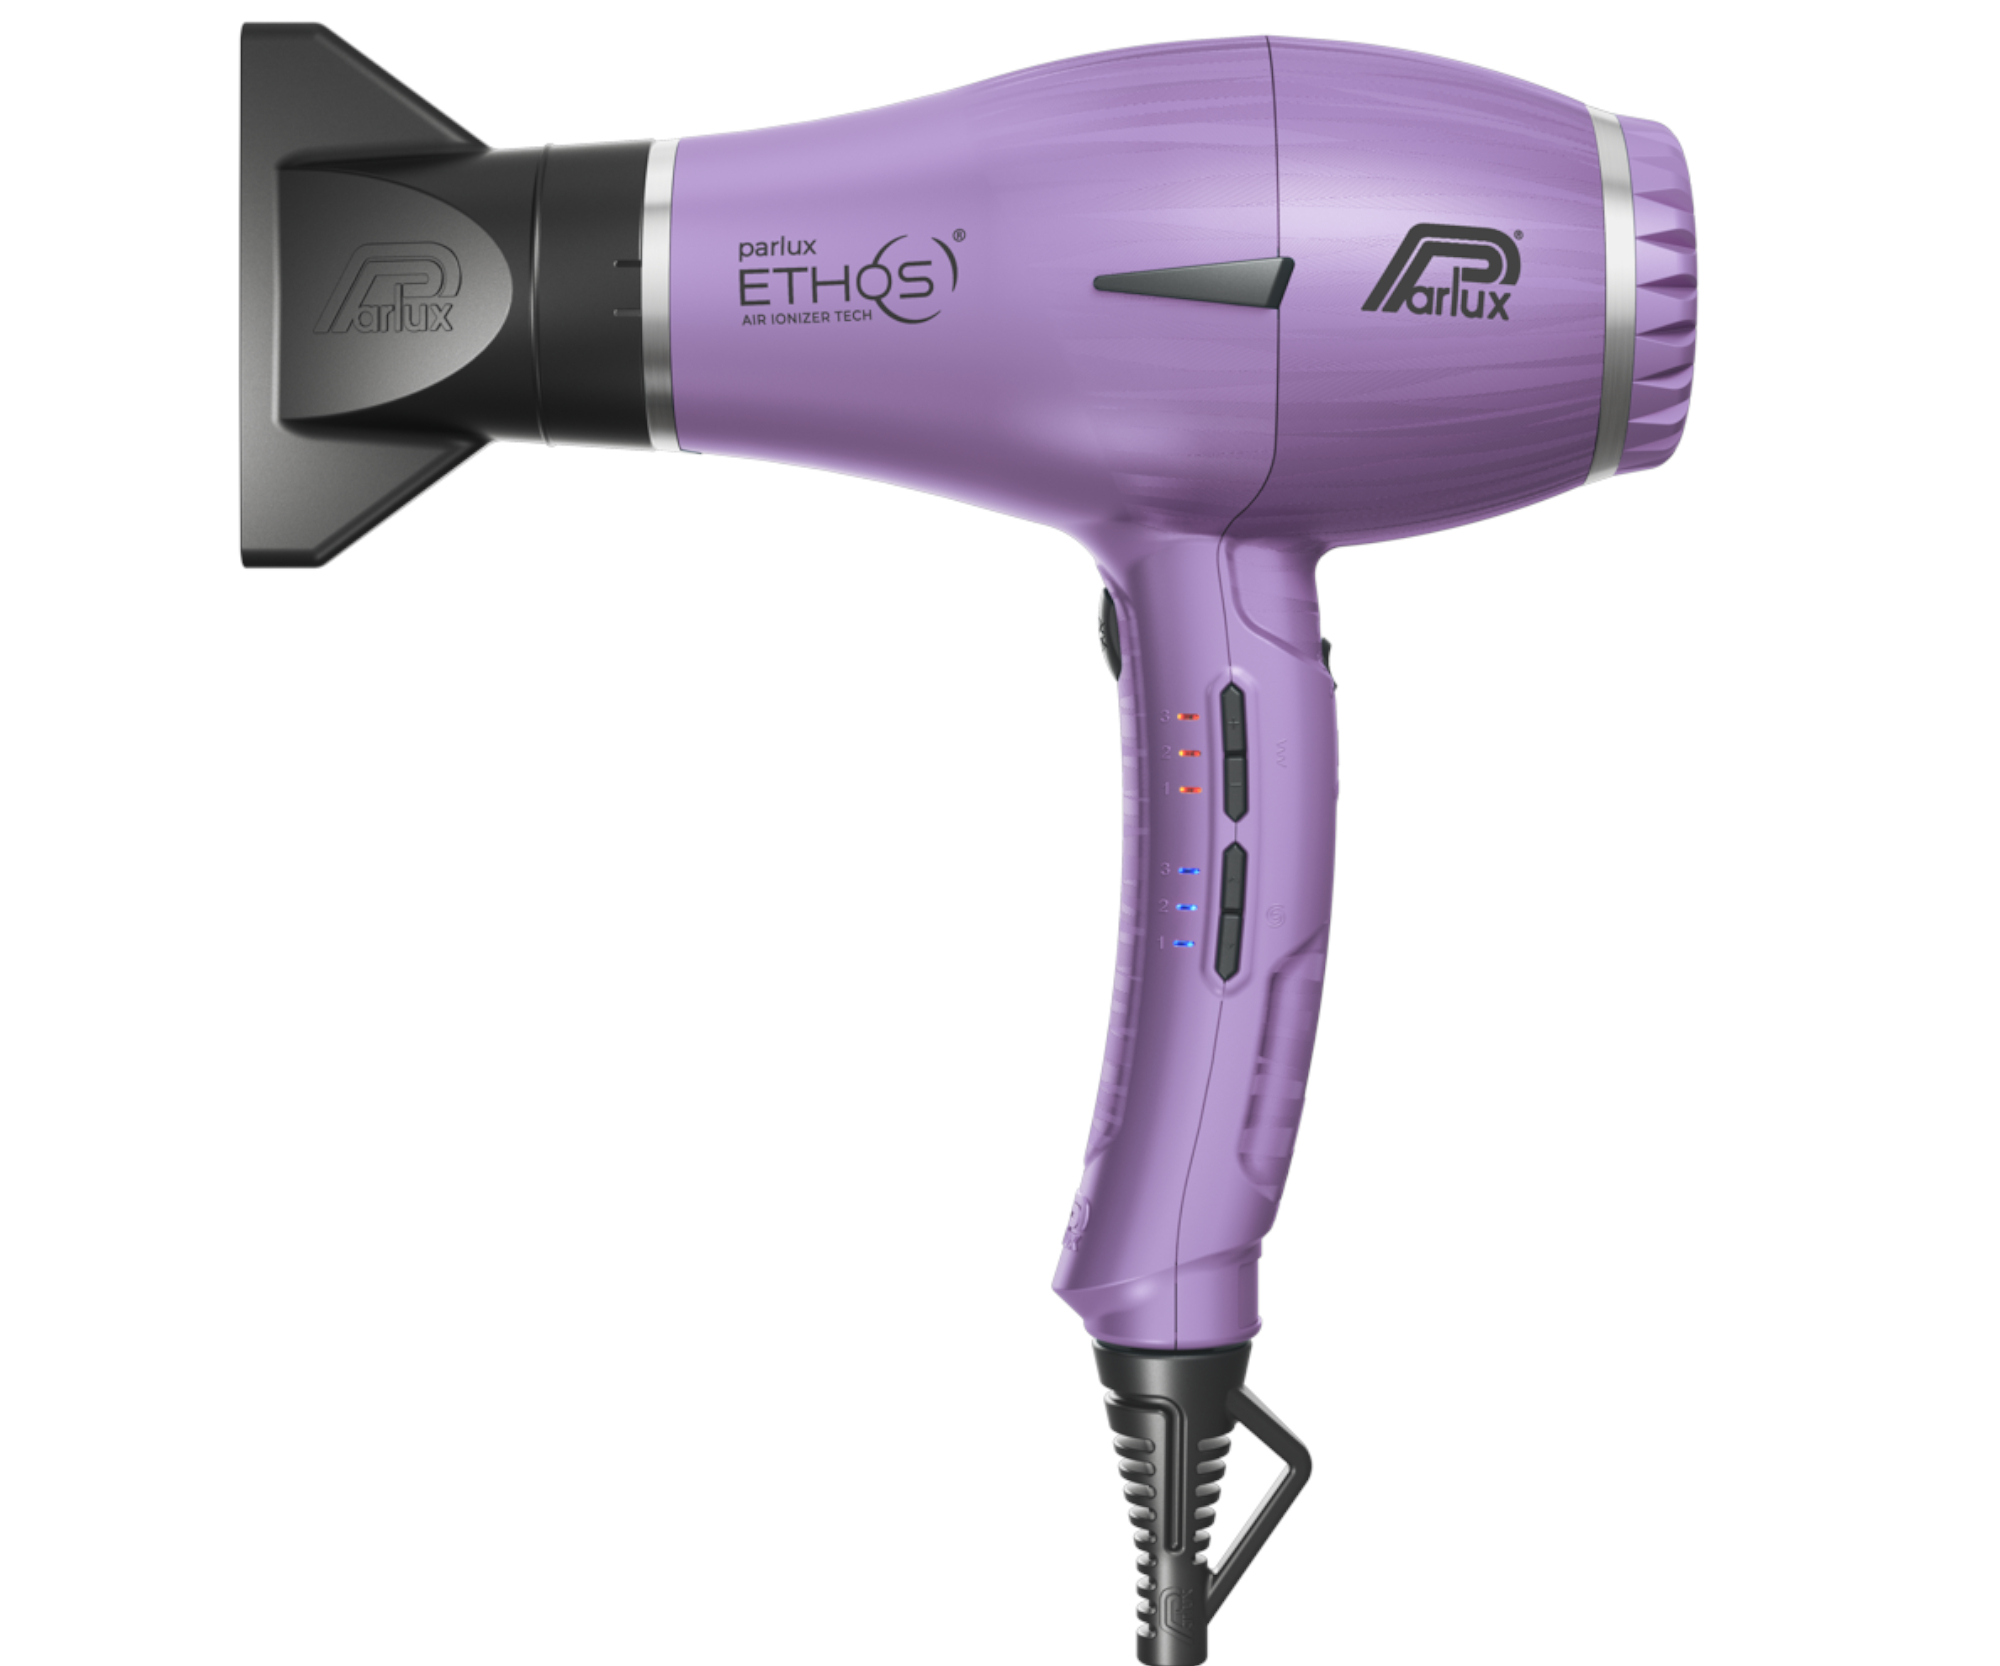 Profesionální fén na vlasy Parlux Ethos - 2300 W, fialový + dárek zdarma